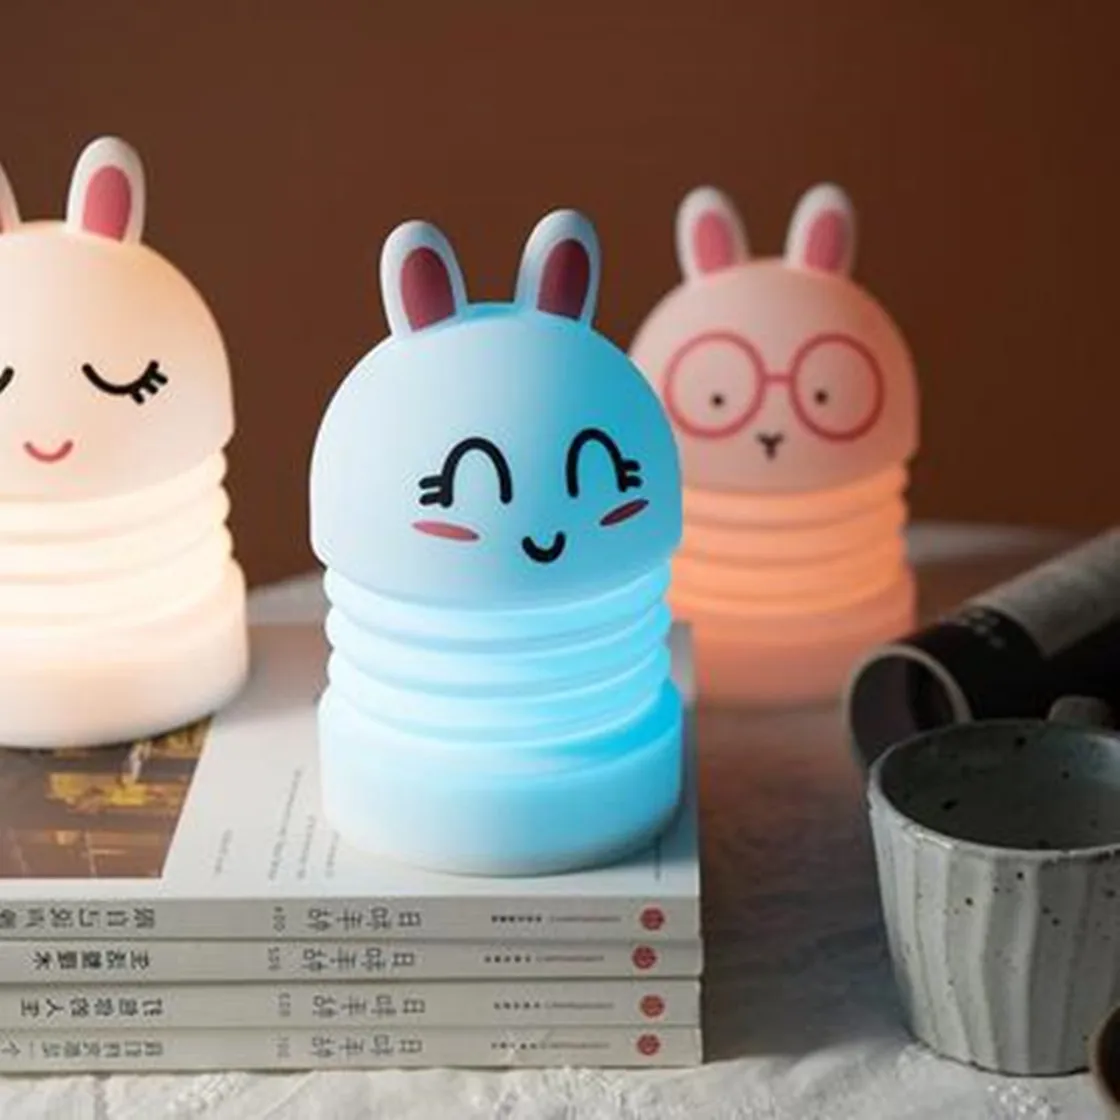 

2021 Новый Кролик светодиодный Ночной светильник сенсорный Сенсор красочные лампа в форме кролика USB Перезаряжаемые спальни ночники для дете...